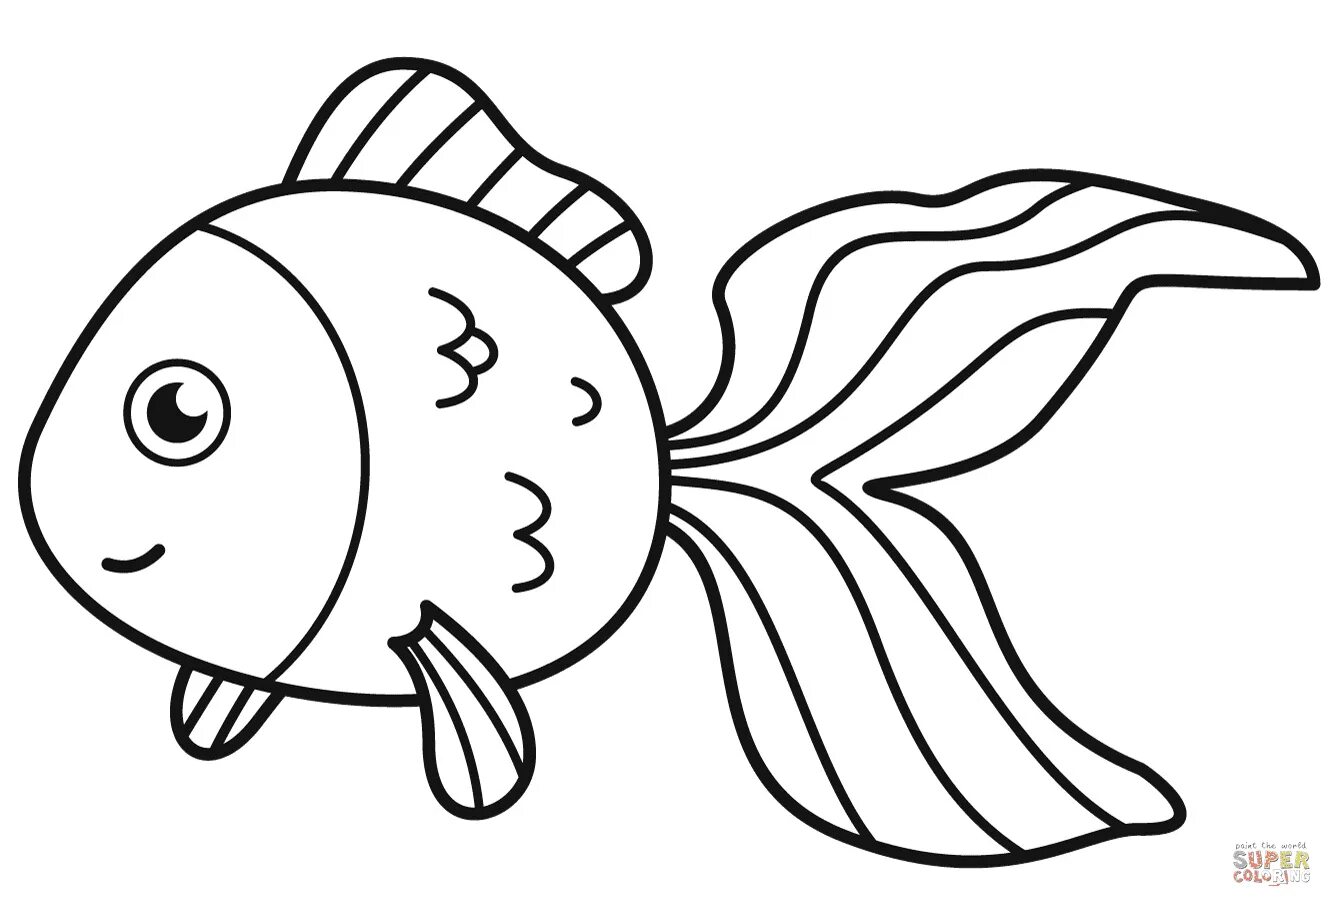 Раскраска рыбка. Золотая рыбка раскраска. Рыбка раскраска для детей. Золотая рыбка раскраска для детей. Раскраски рыбки для детей 3 4 лет